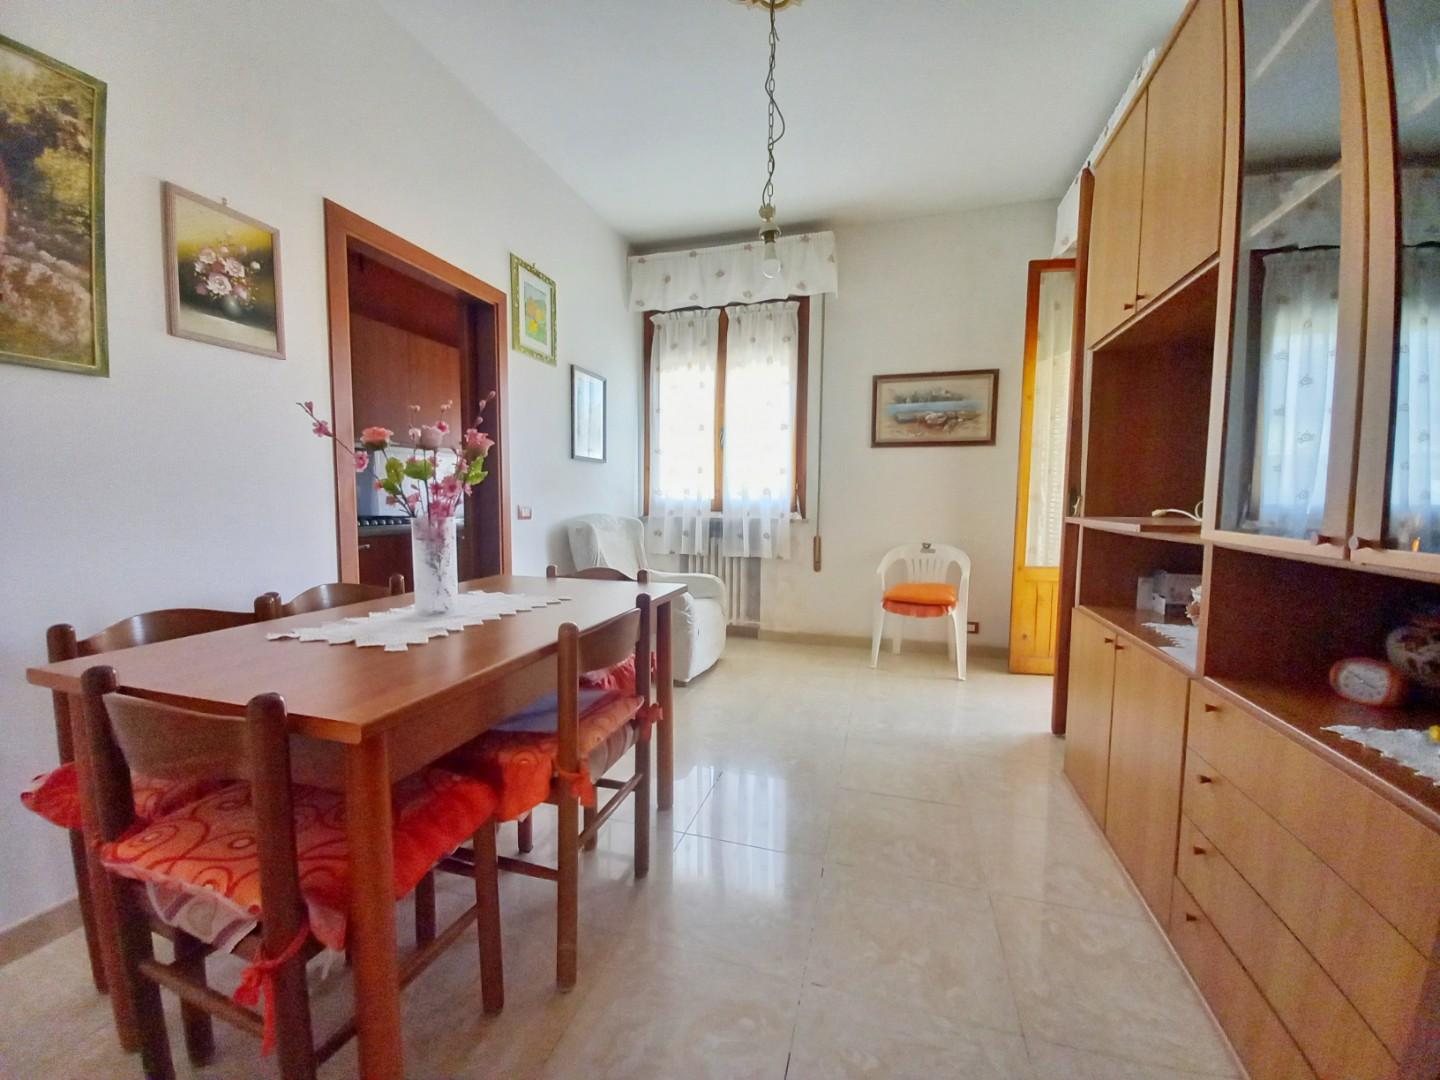 Appartamento in vendita a Castelfiorentino, 3 locali, prezzo € 125.000 | PortaleAgenzieImmobiliari.it